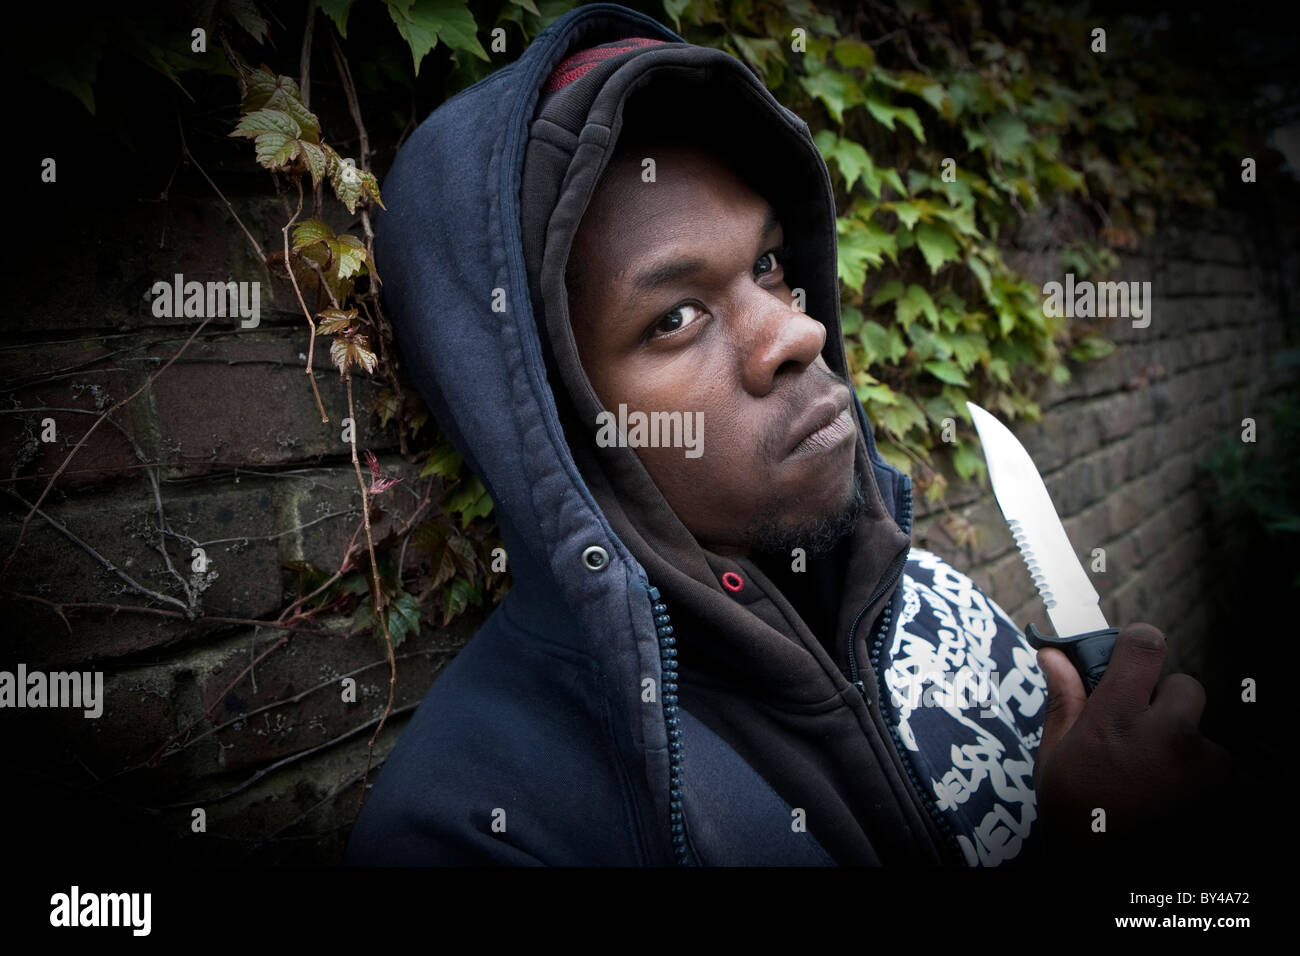 Junge schwarze Jugend-Modell tragen ein hoody mit einem Messer Stockfoto